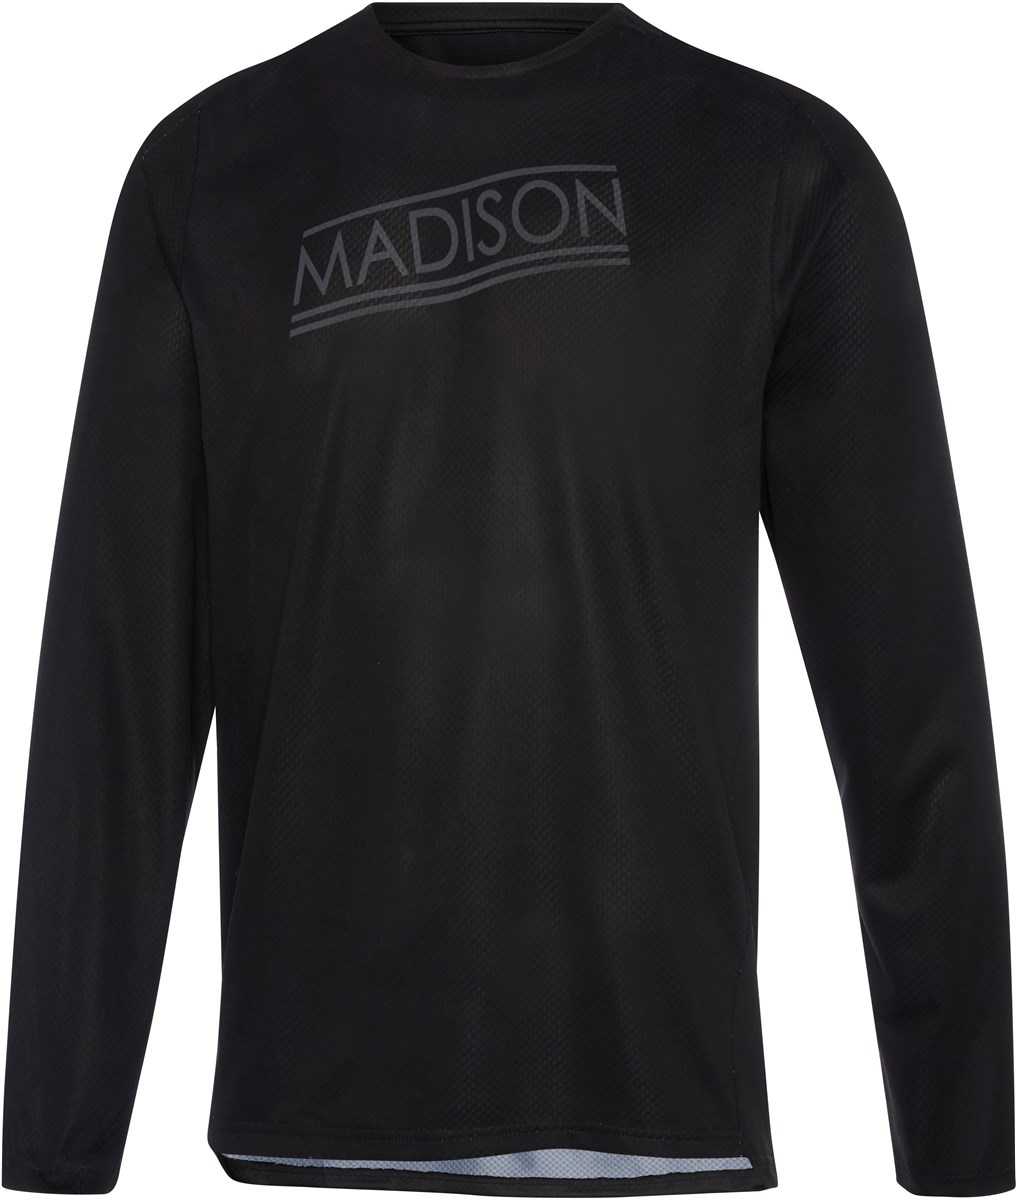 Madison Flux Enduro Long Sleeve Jersey product image